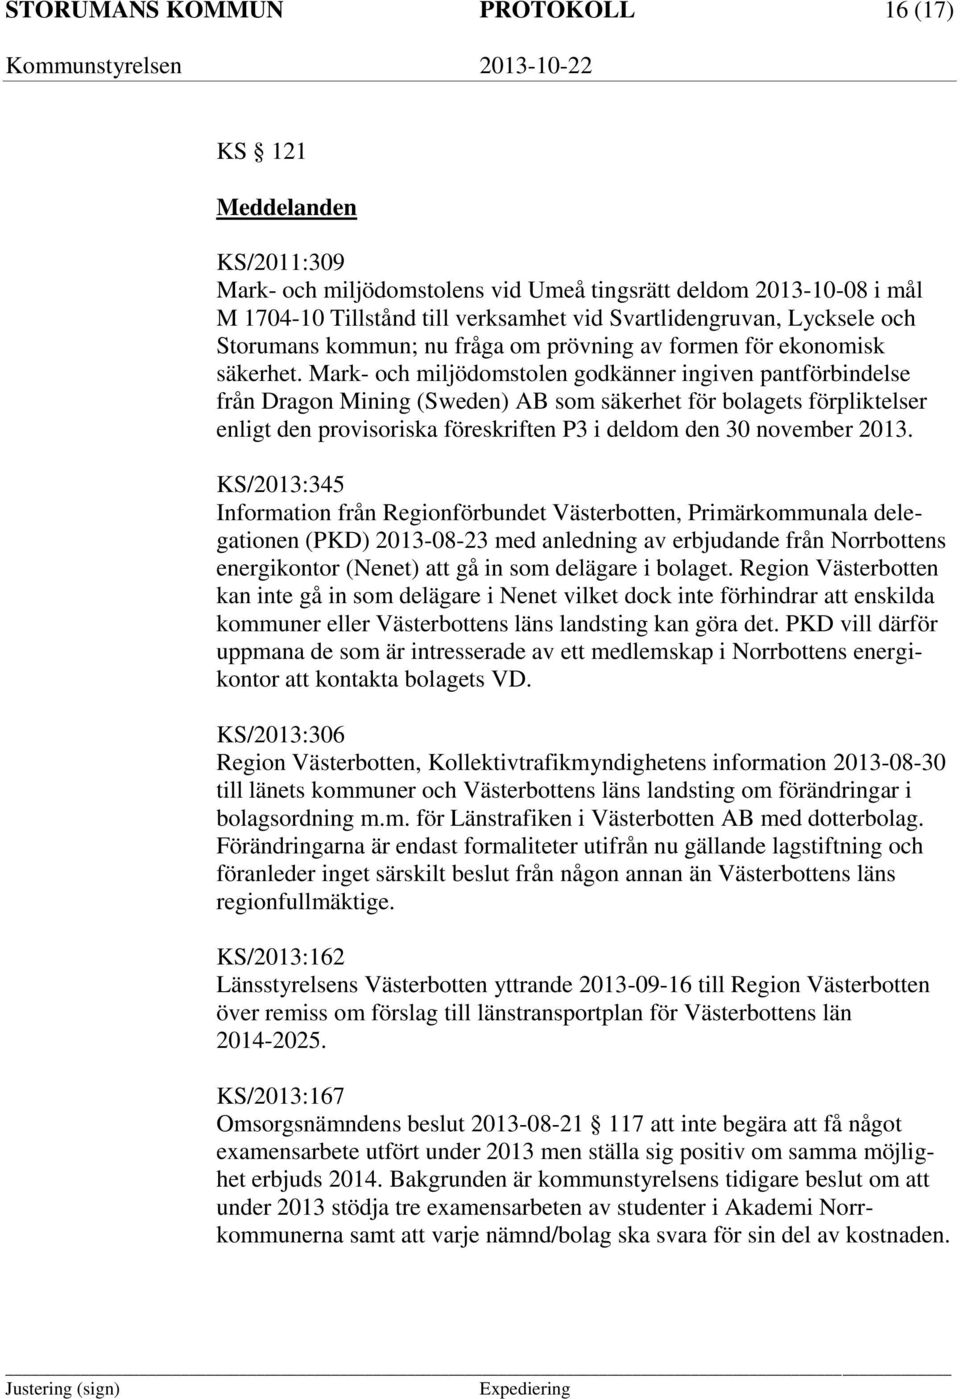 Mark- och miljödomstolen godkänner ingiven pantförbindelse från Dragon Mining (Sweden) AB som säkerhet för bolagets förpliktelser enligt den provisoriska föreskriften P3 i deldom den 30 november 2013.